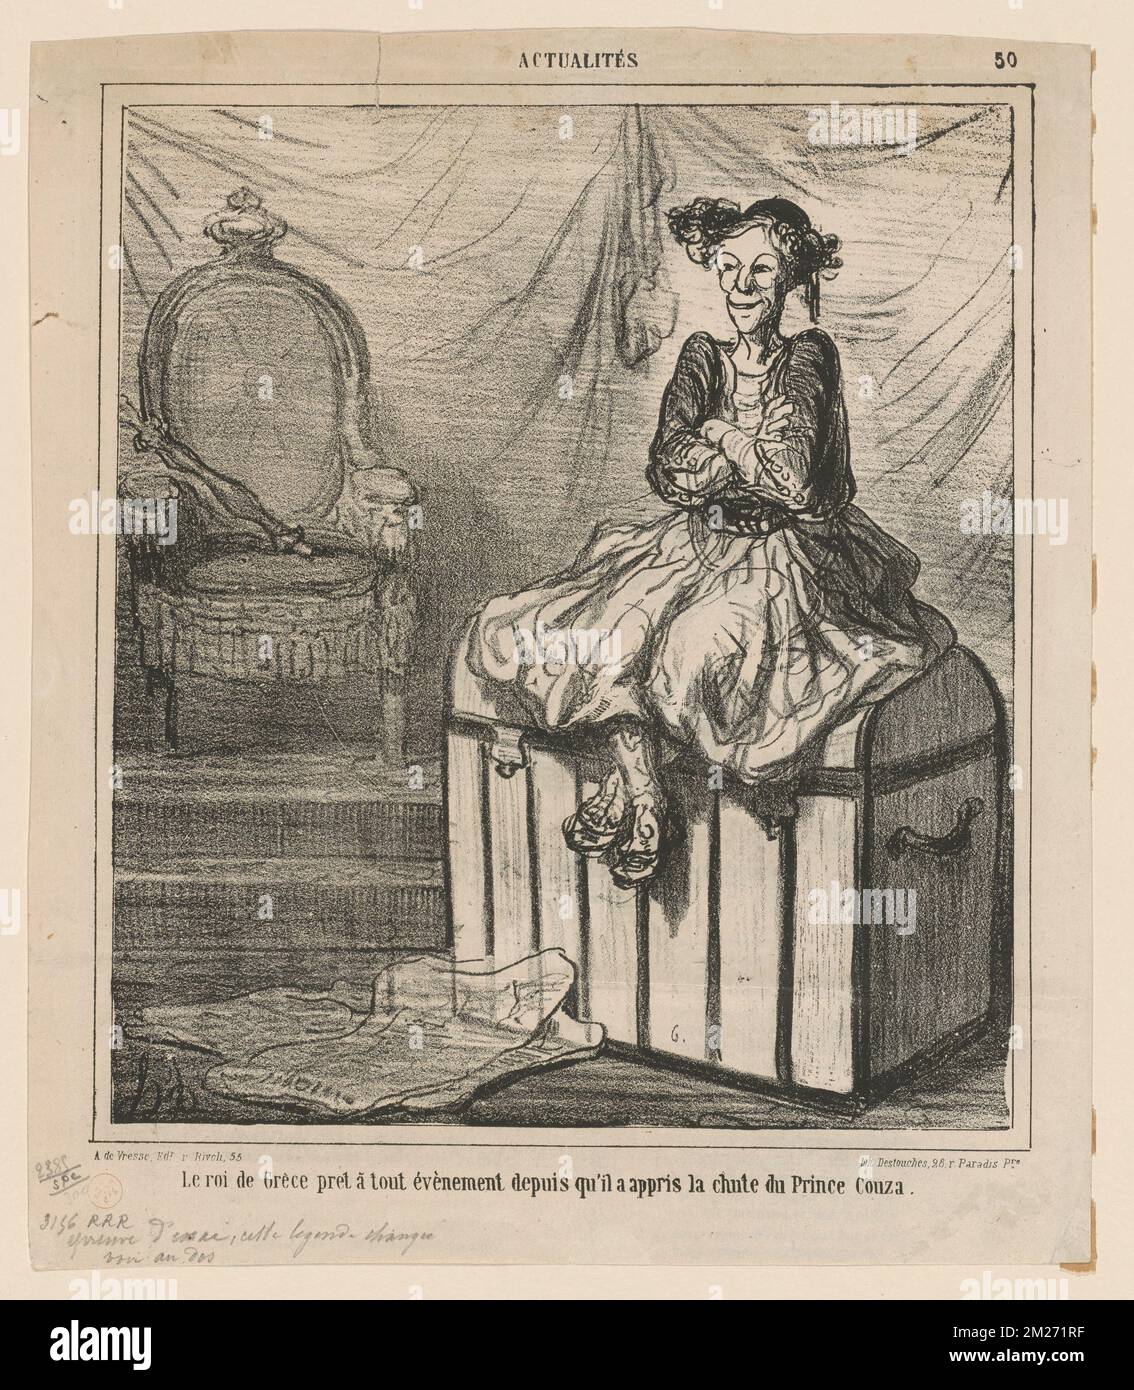 Chargé...de garder les insignes de la souveraineté Moldo Valaque. Honoré Daumier (1808-1879). Lithographs Stock Photo